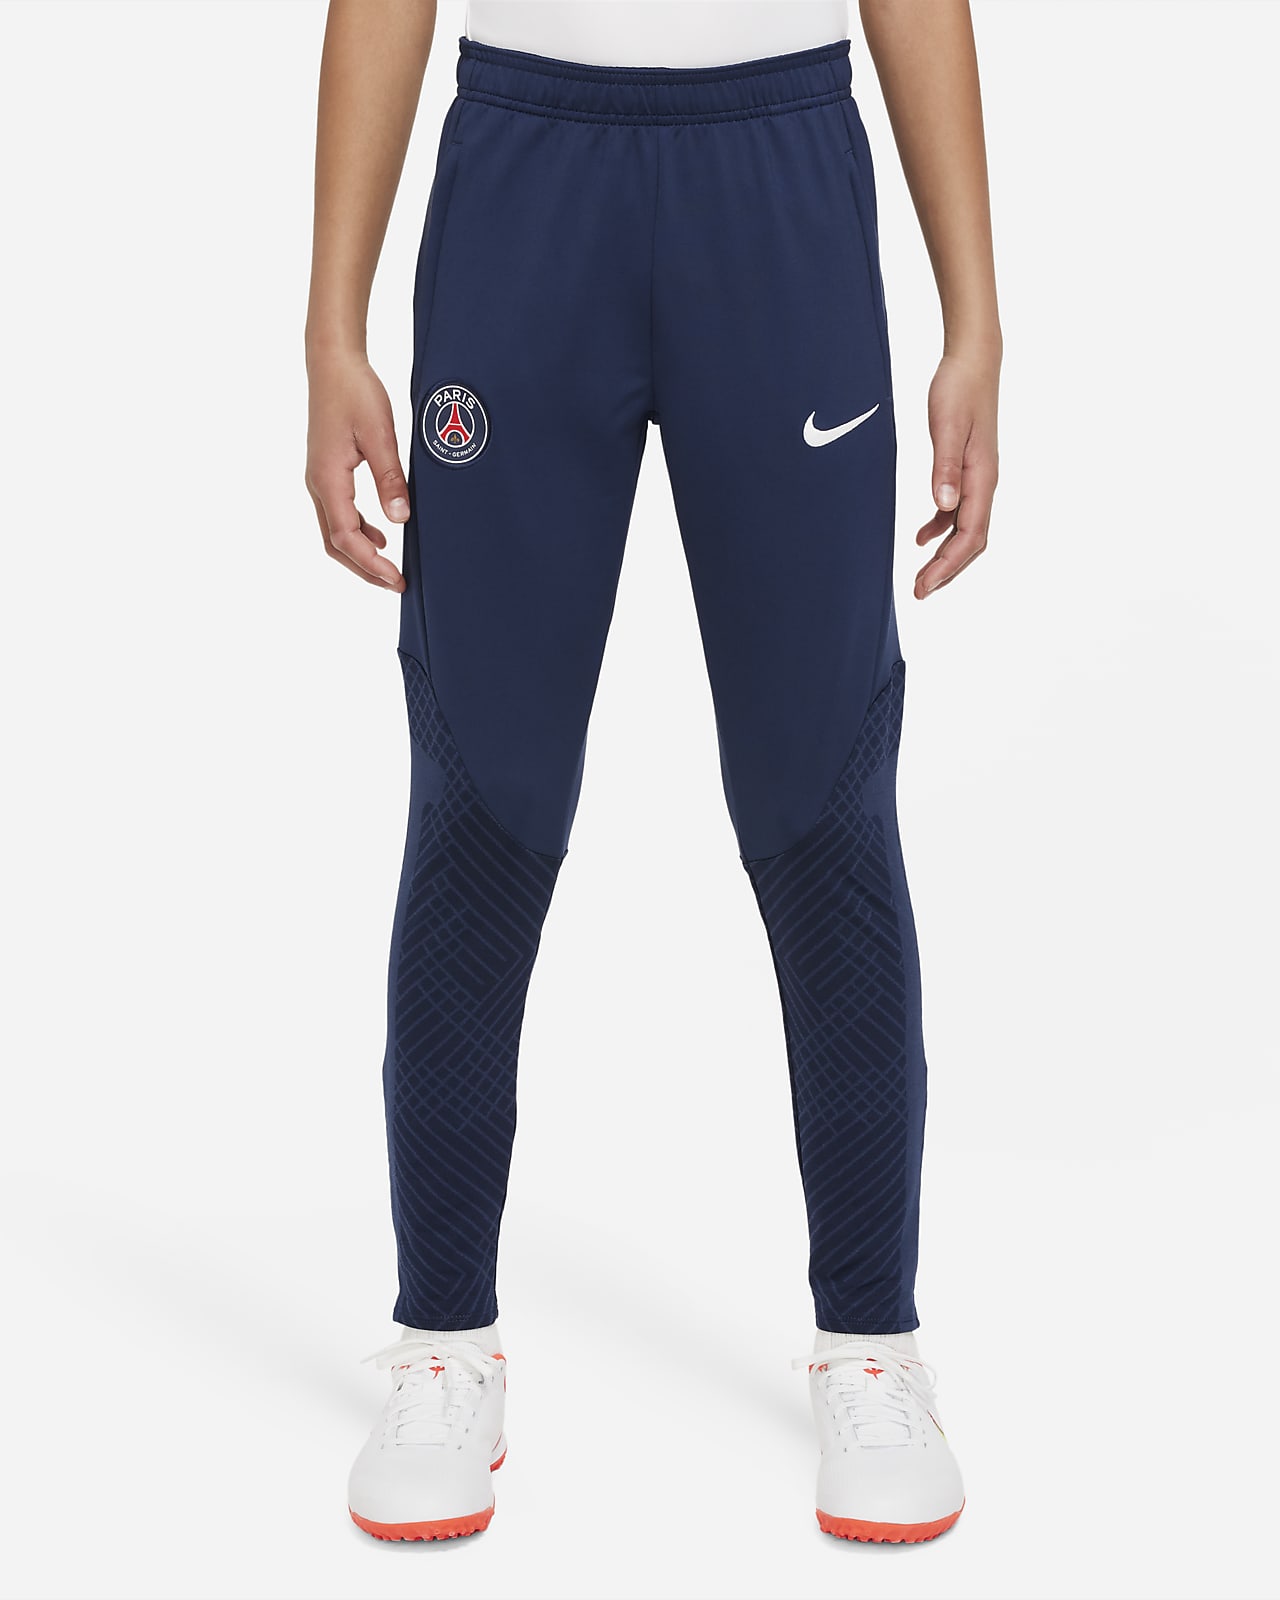 Patriottisch Trots Hedendaags Paris Saint-Germain Nike Dri-FIT voetbalbroek voor kids. Nike NL